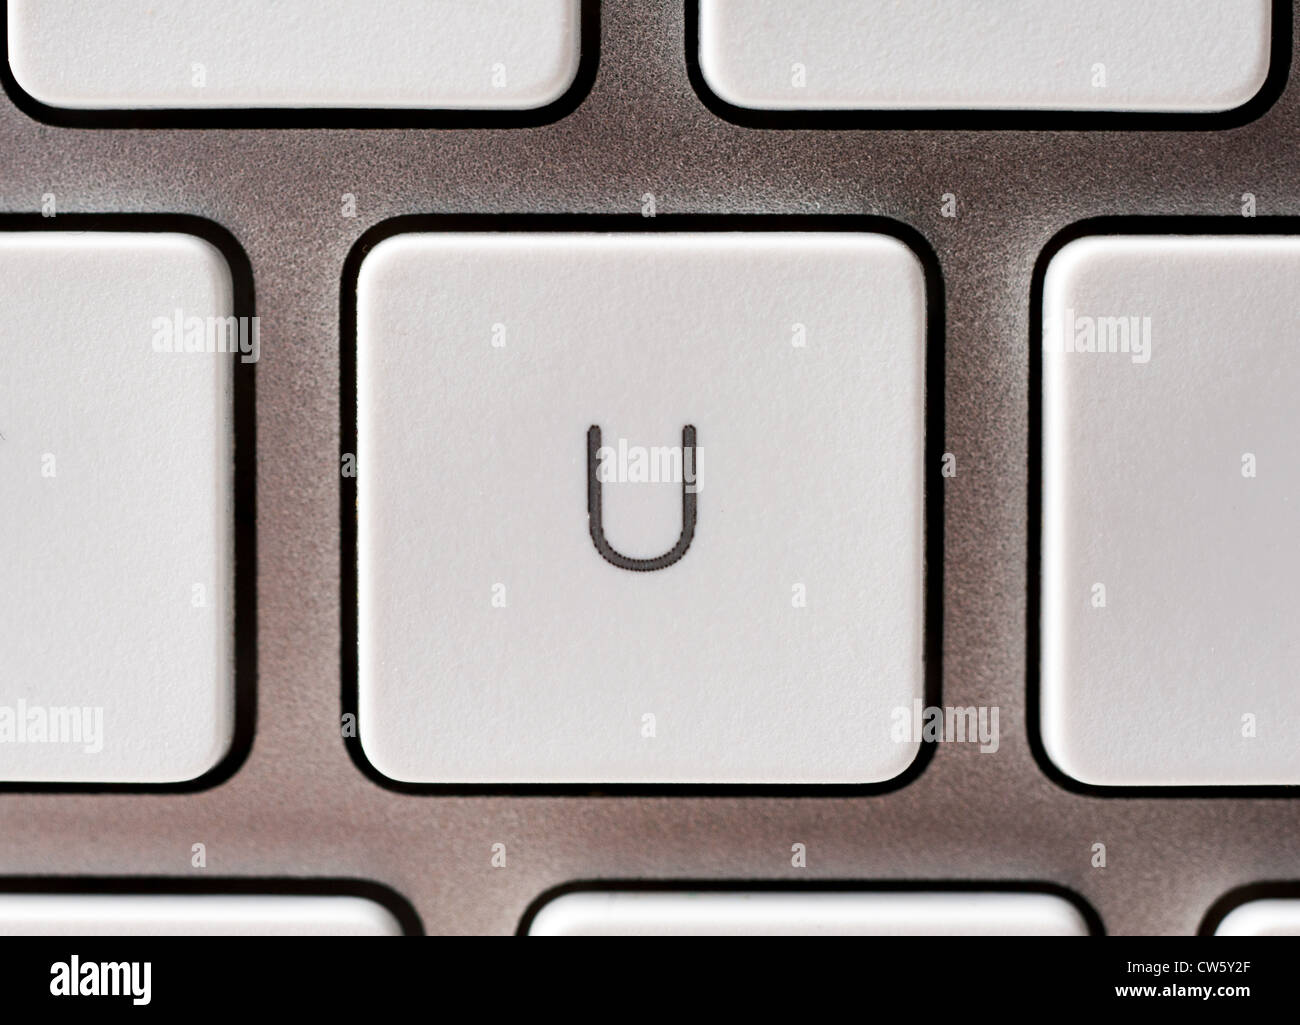 Buchstabe U auf einer Apple-Tastatur Stockfoto